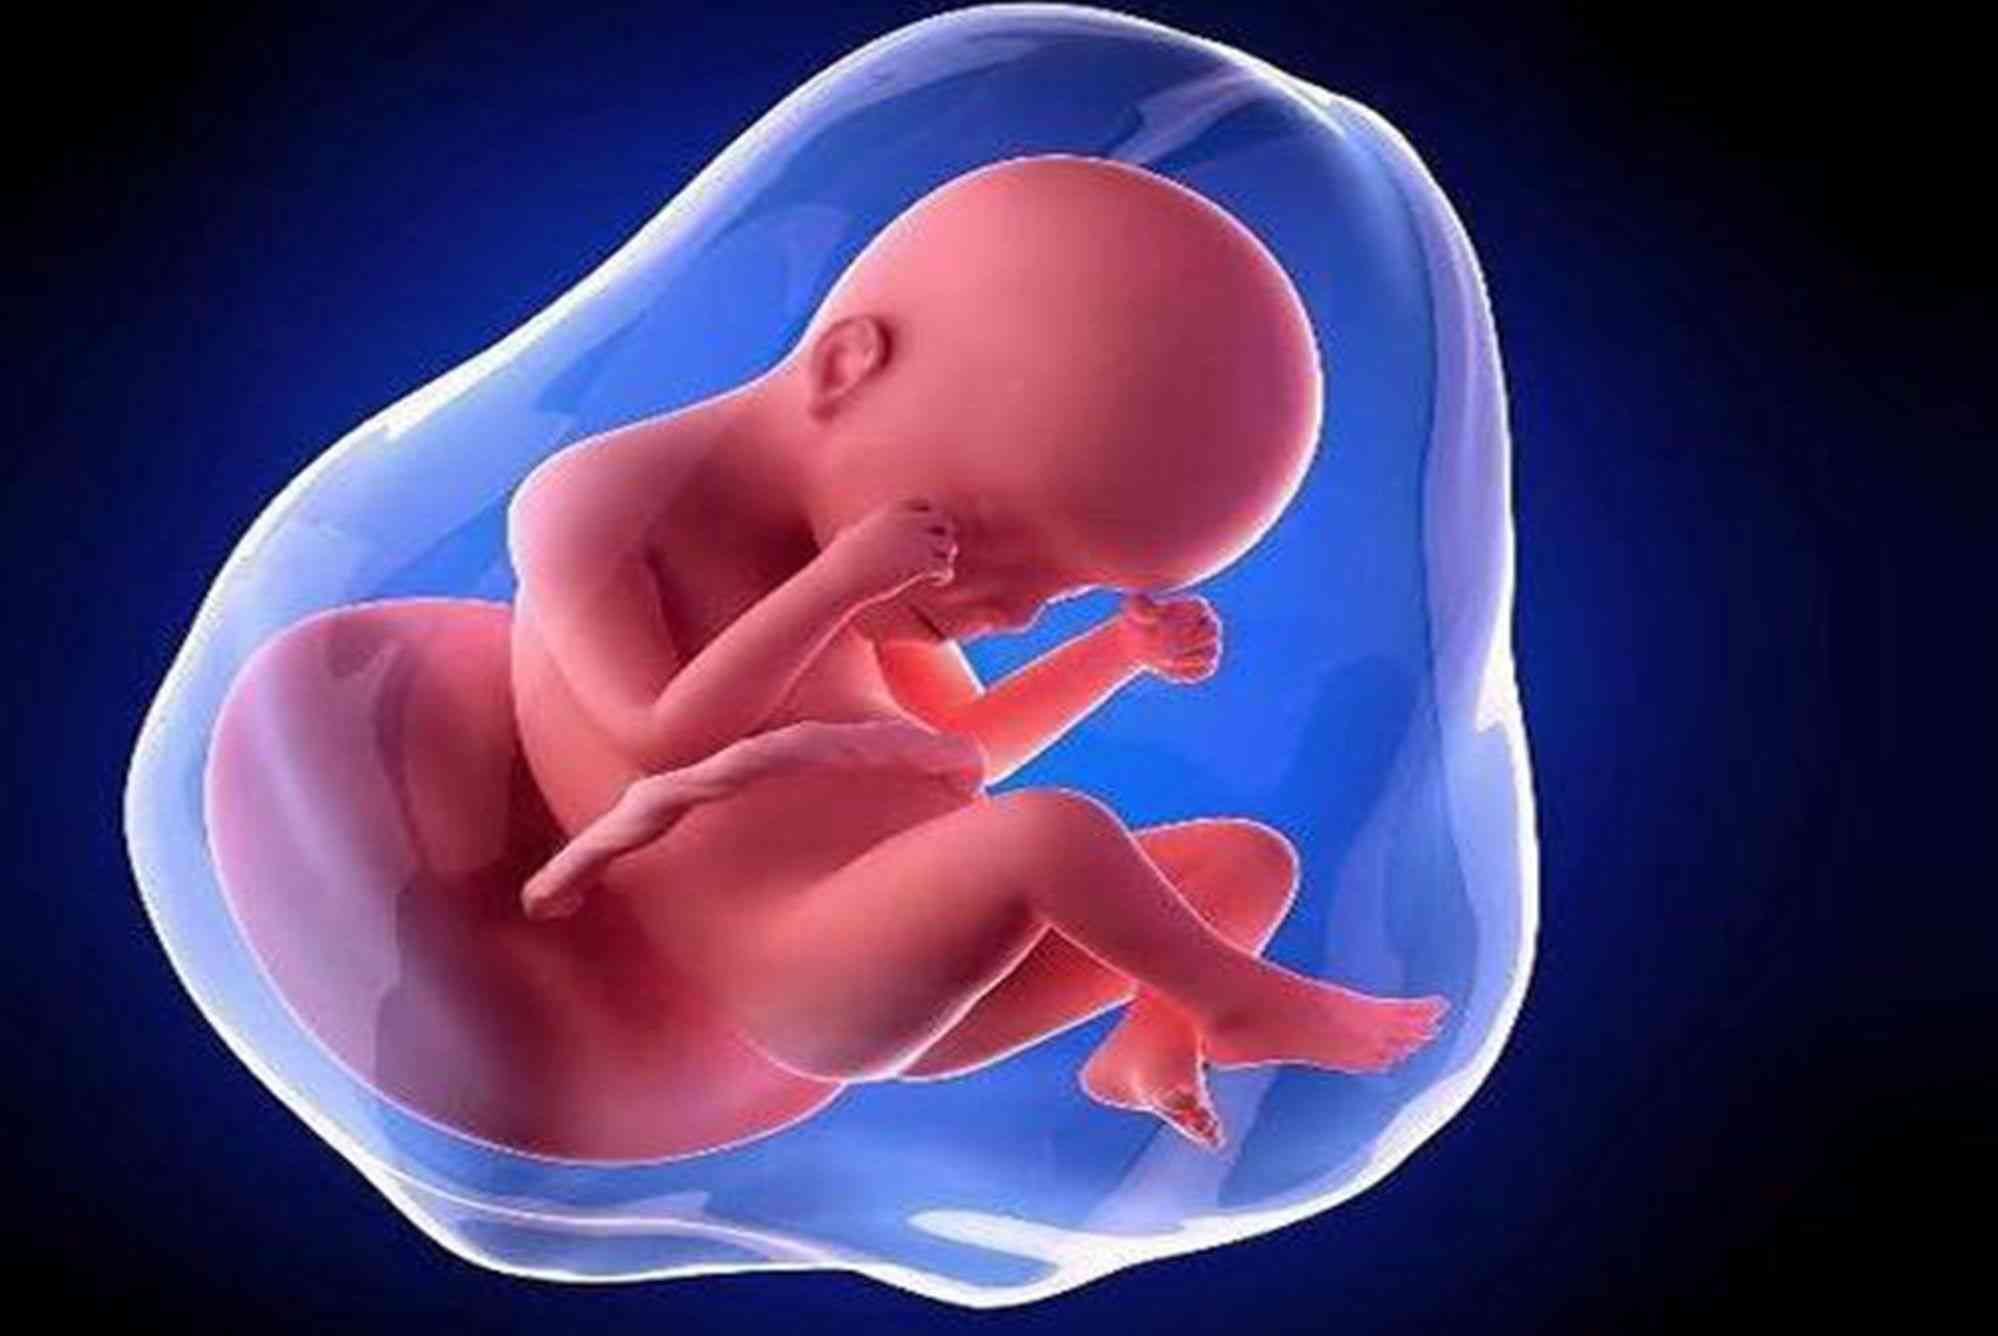 胎儿生长可能导致孕妇左后背疼